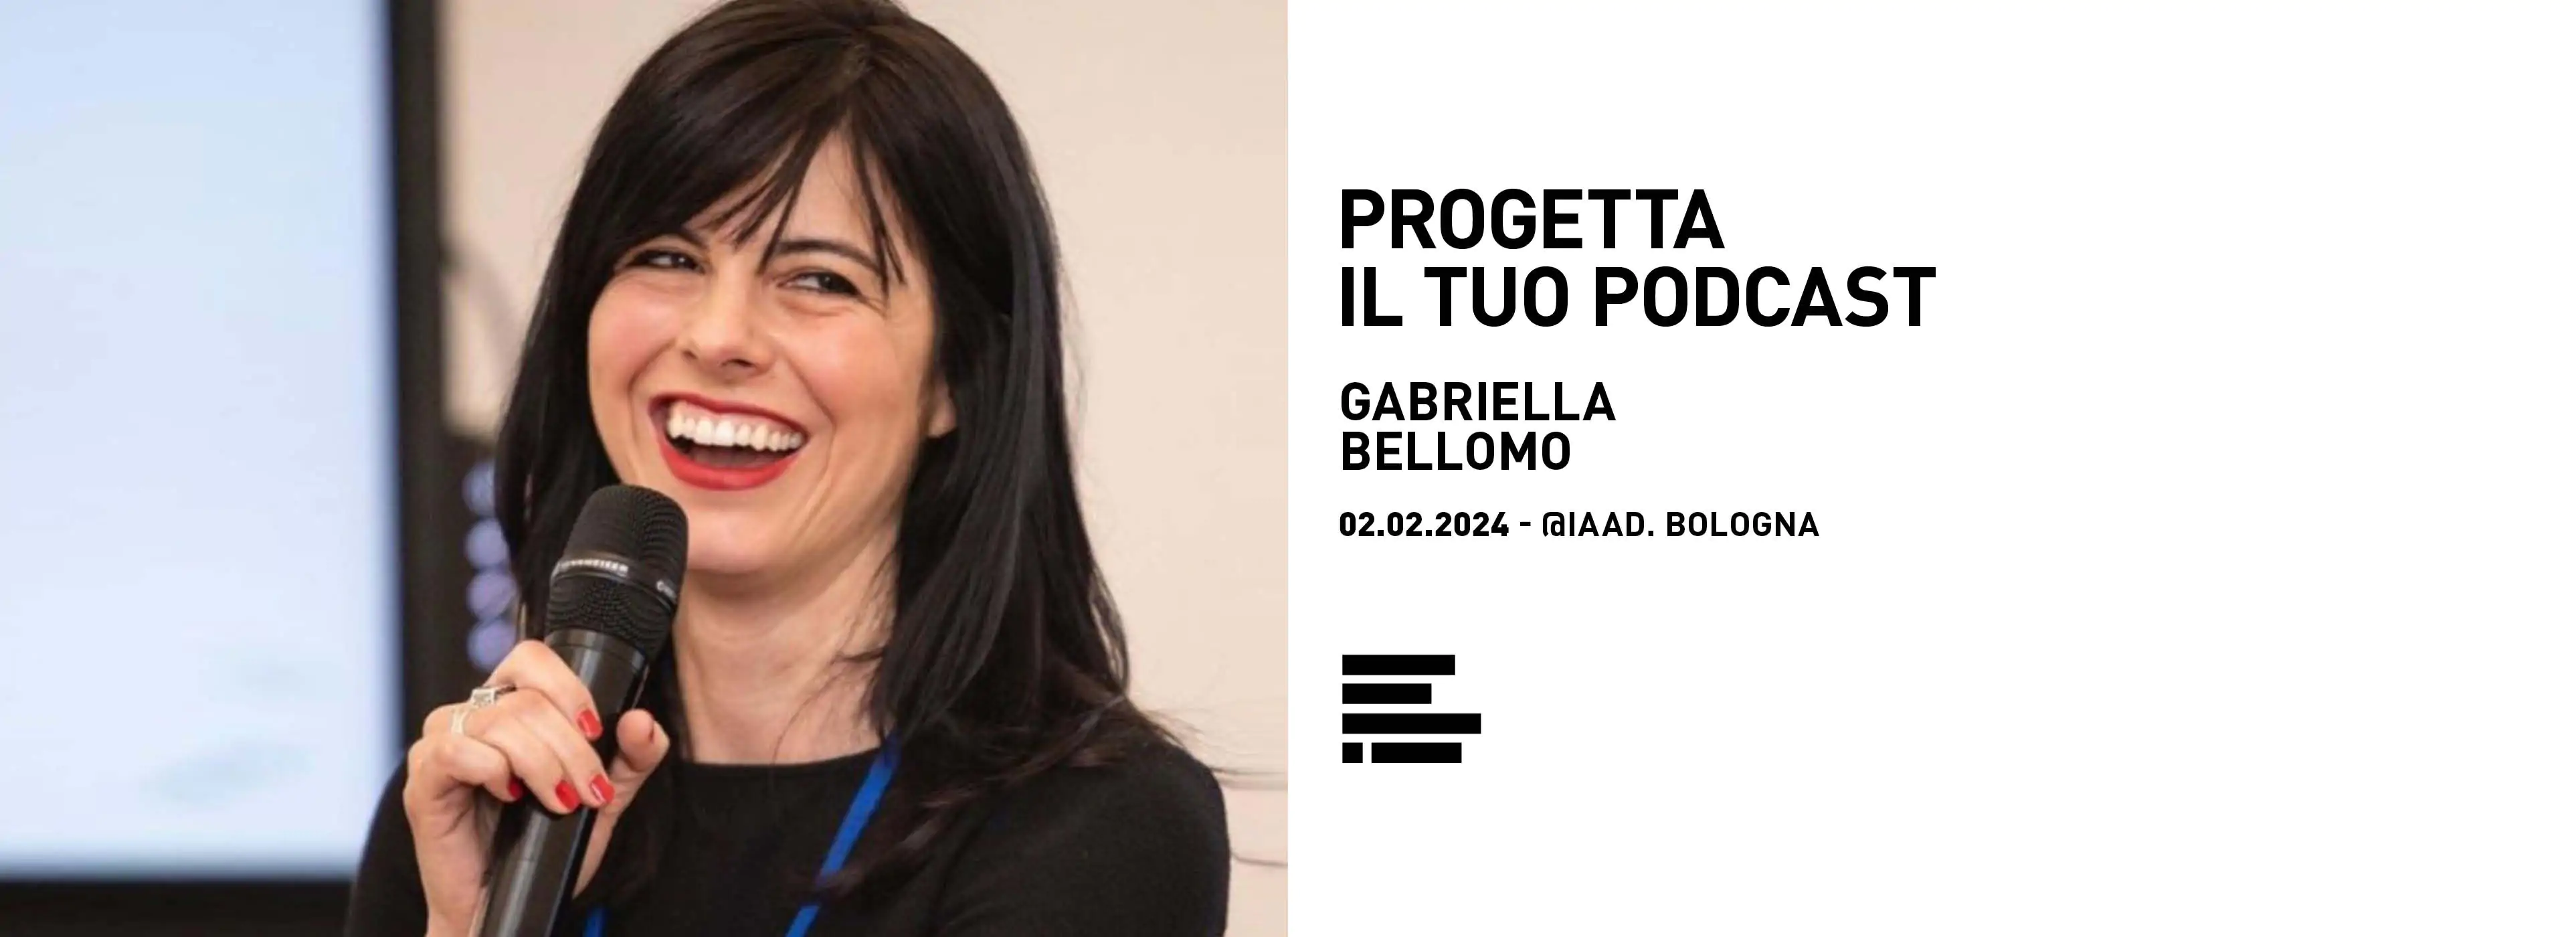 Gabriella Bellomo ospite IAAD. con il libro "Progetta il tuo Podcast"